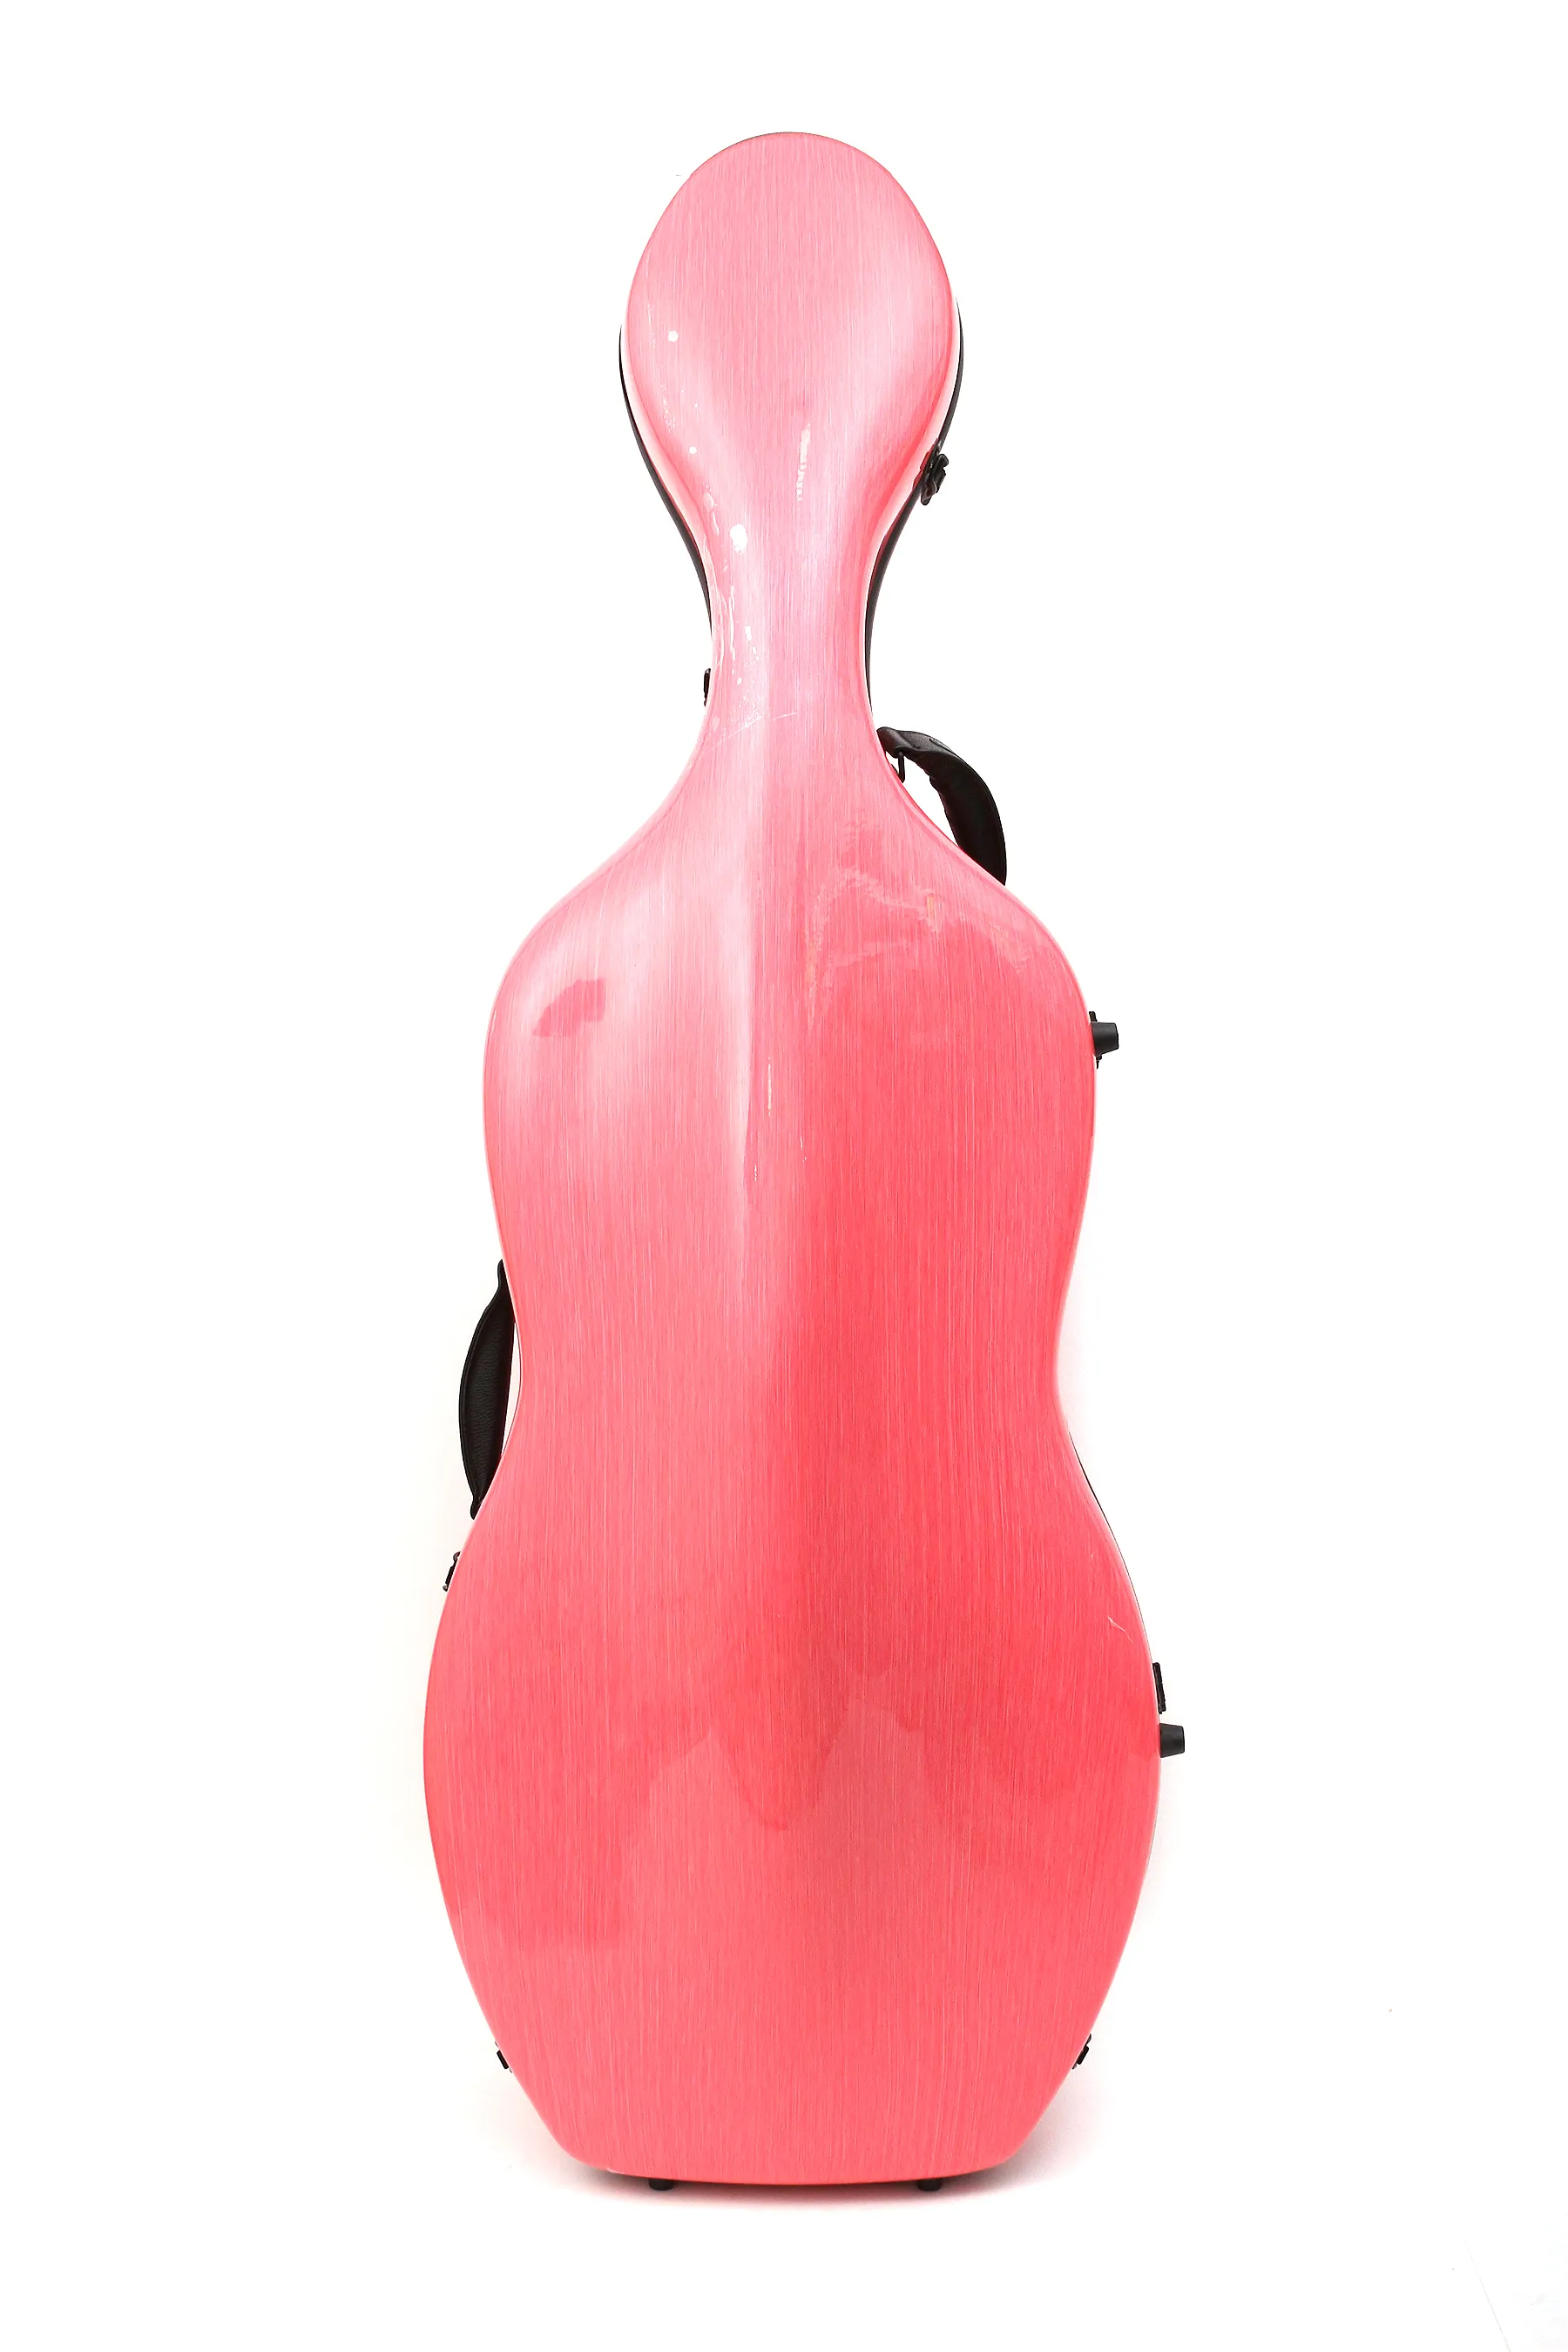 Yinfente 4/4 wiolonczela skrzynka wiolonczela z włókna węglowego mocna jasnoróżowa kolor 4,2 kg z kołami nosić wiolonczelę